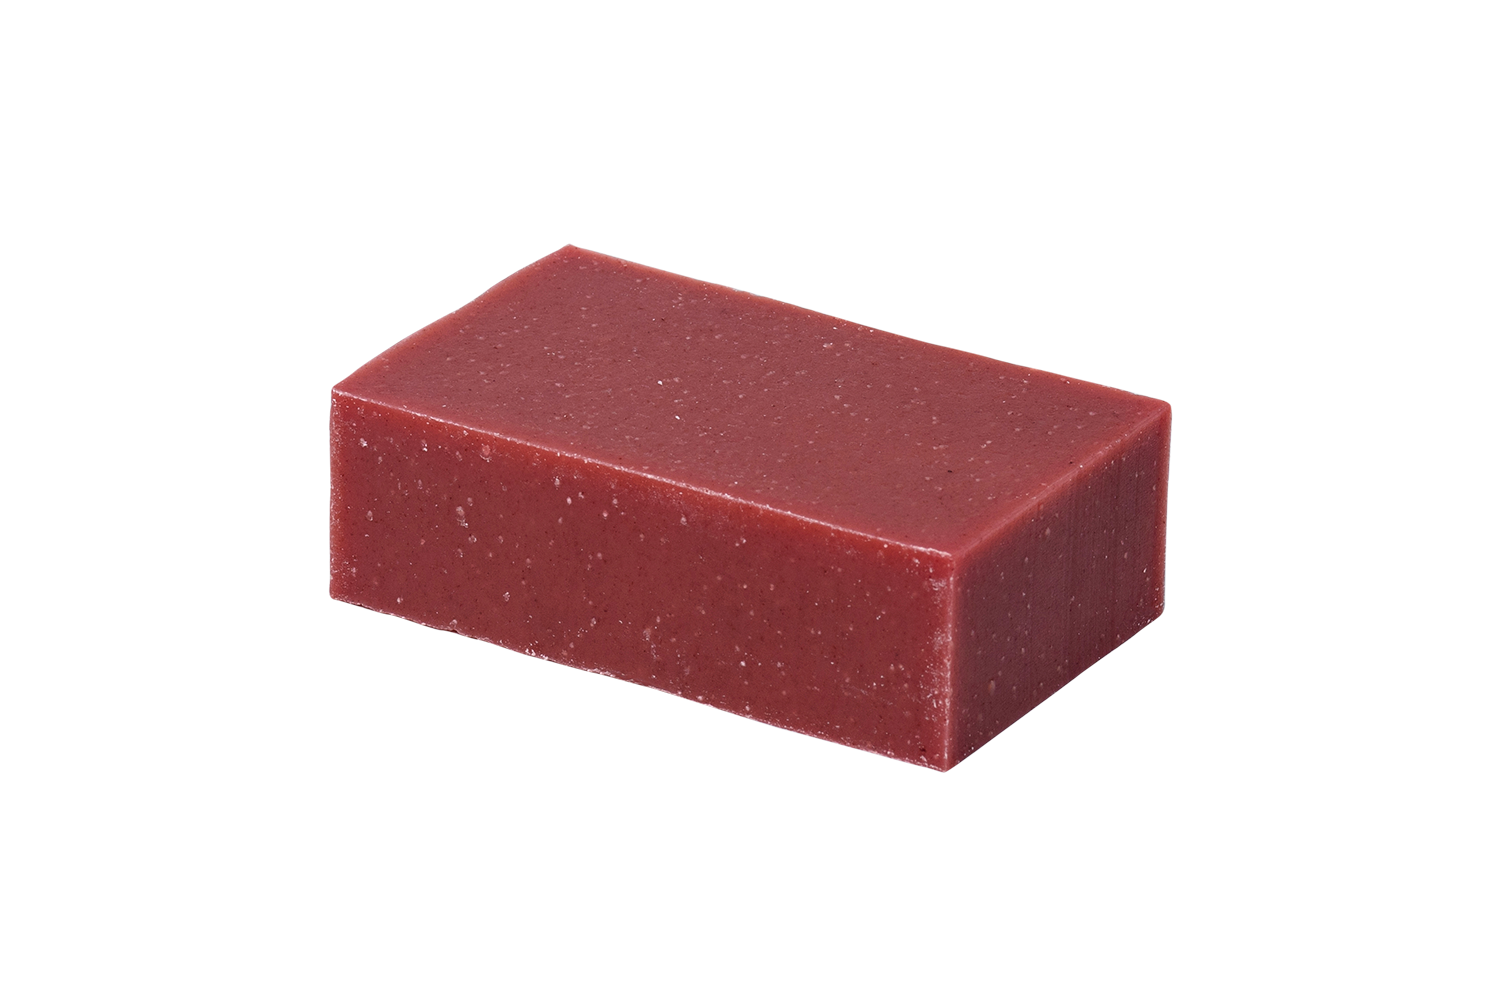 bar of blood orange soap